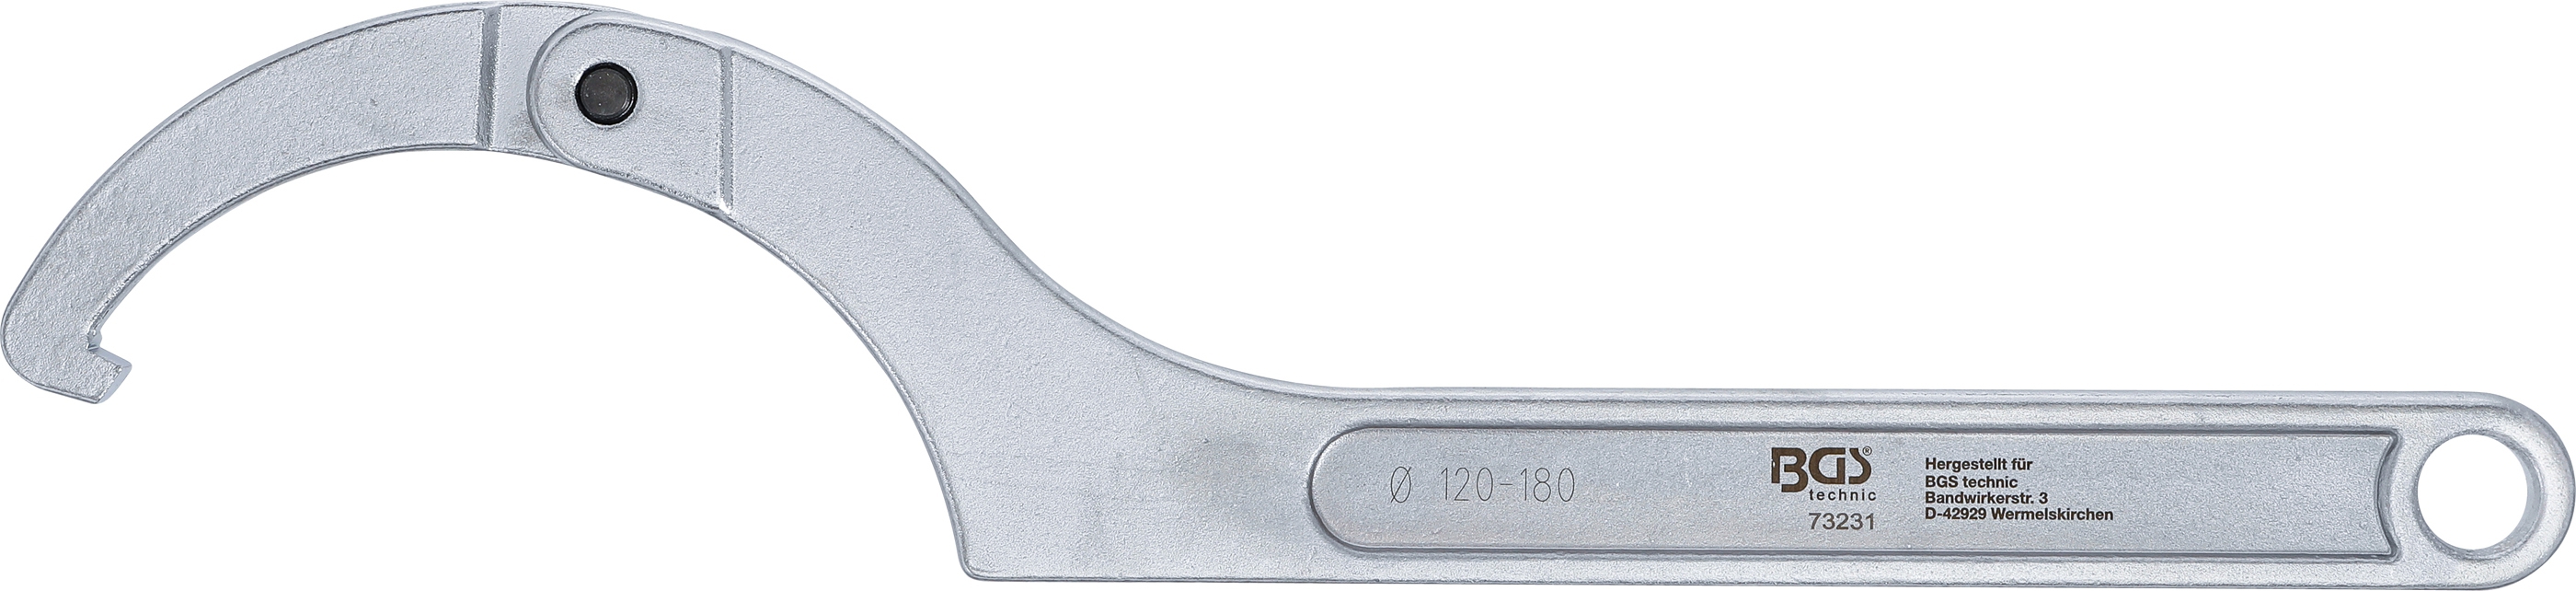 Gelenk-Hakenschlüssel mit Nase | 120 - 180 mm